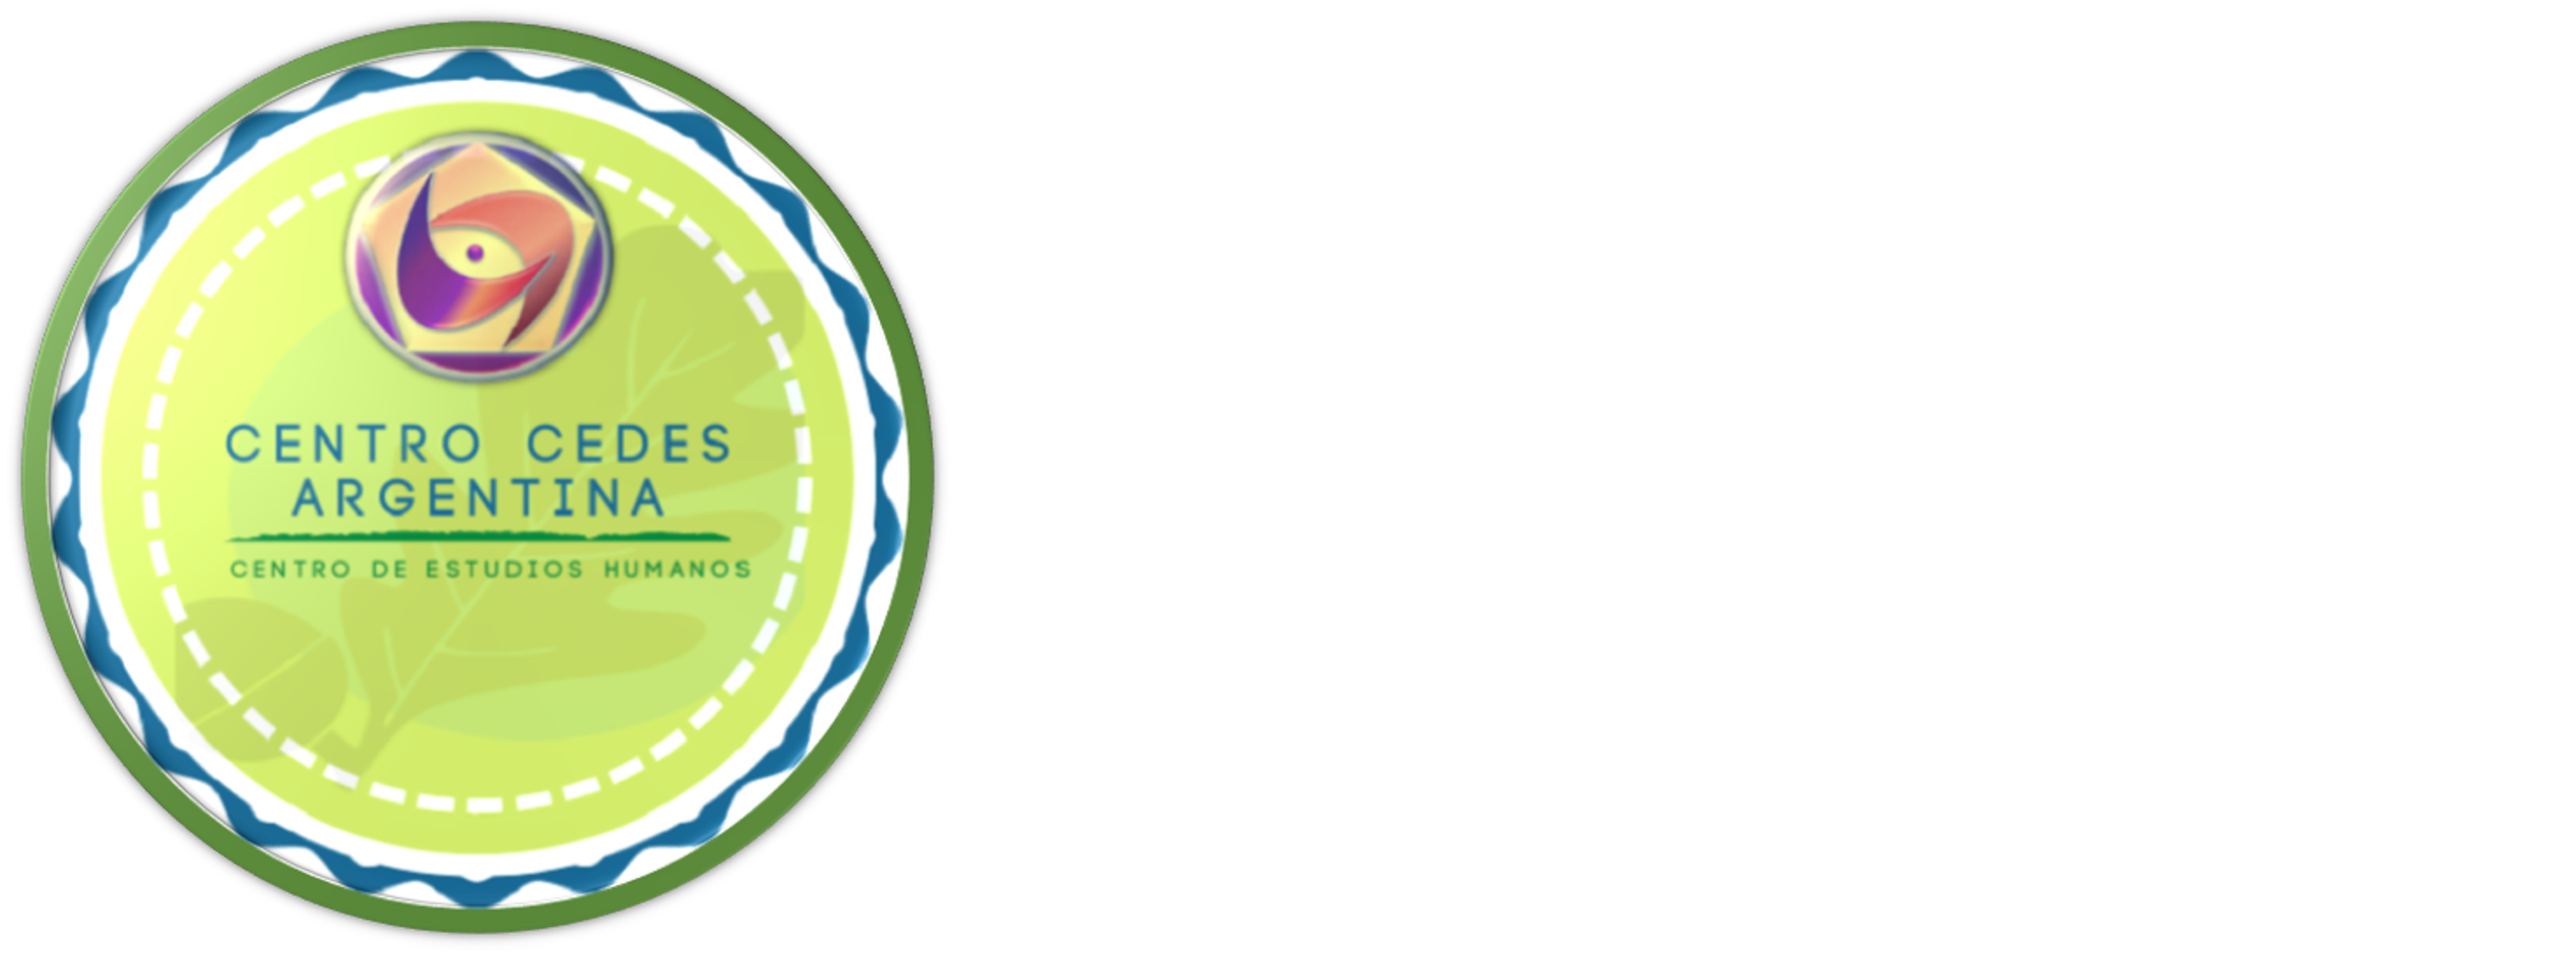 Centro Cedes Argentina